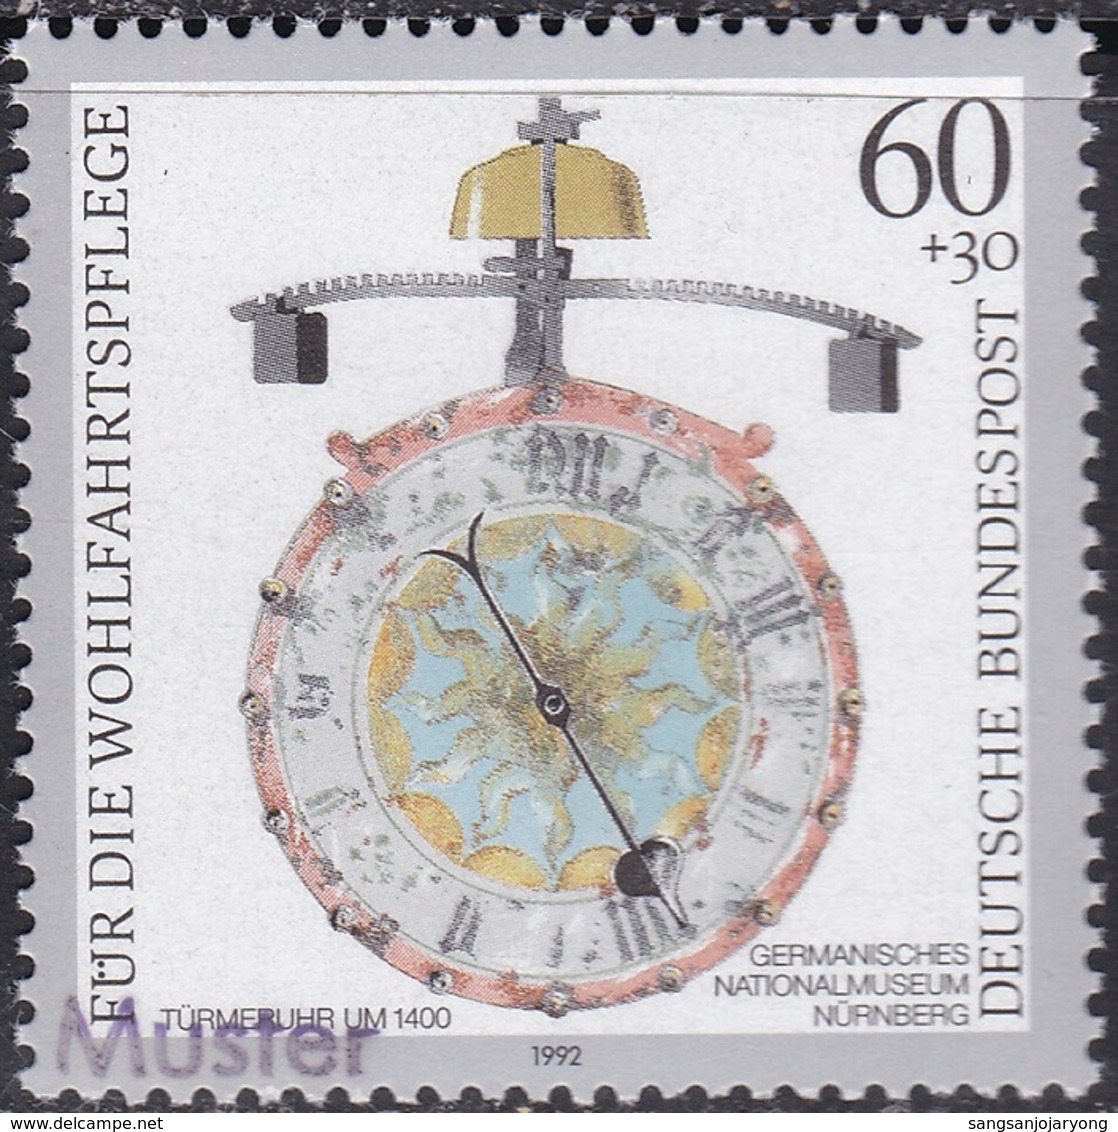 Specimen, Germany ScB734 Antique Clock, Turret (c. 1400), Horloge - Uhrmacherei